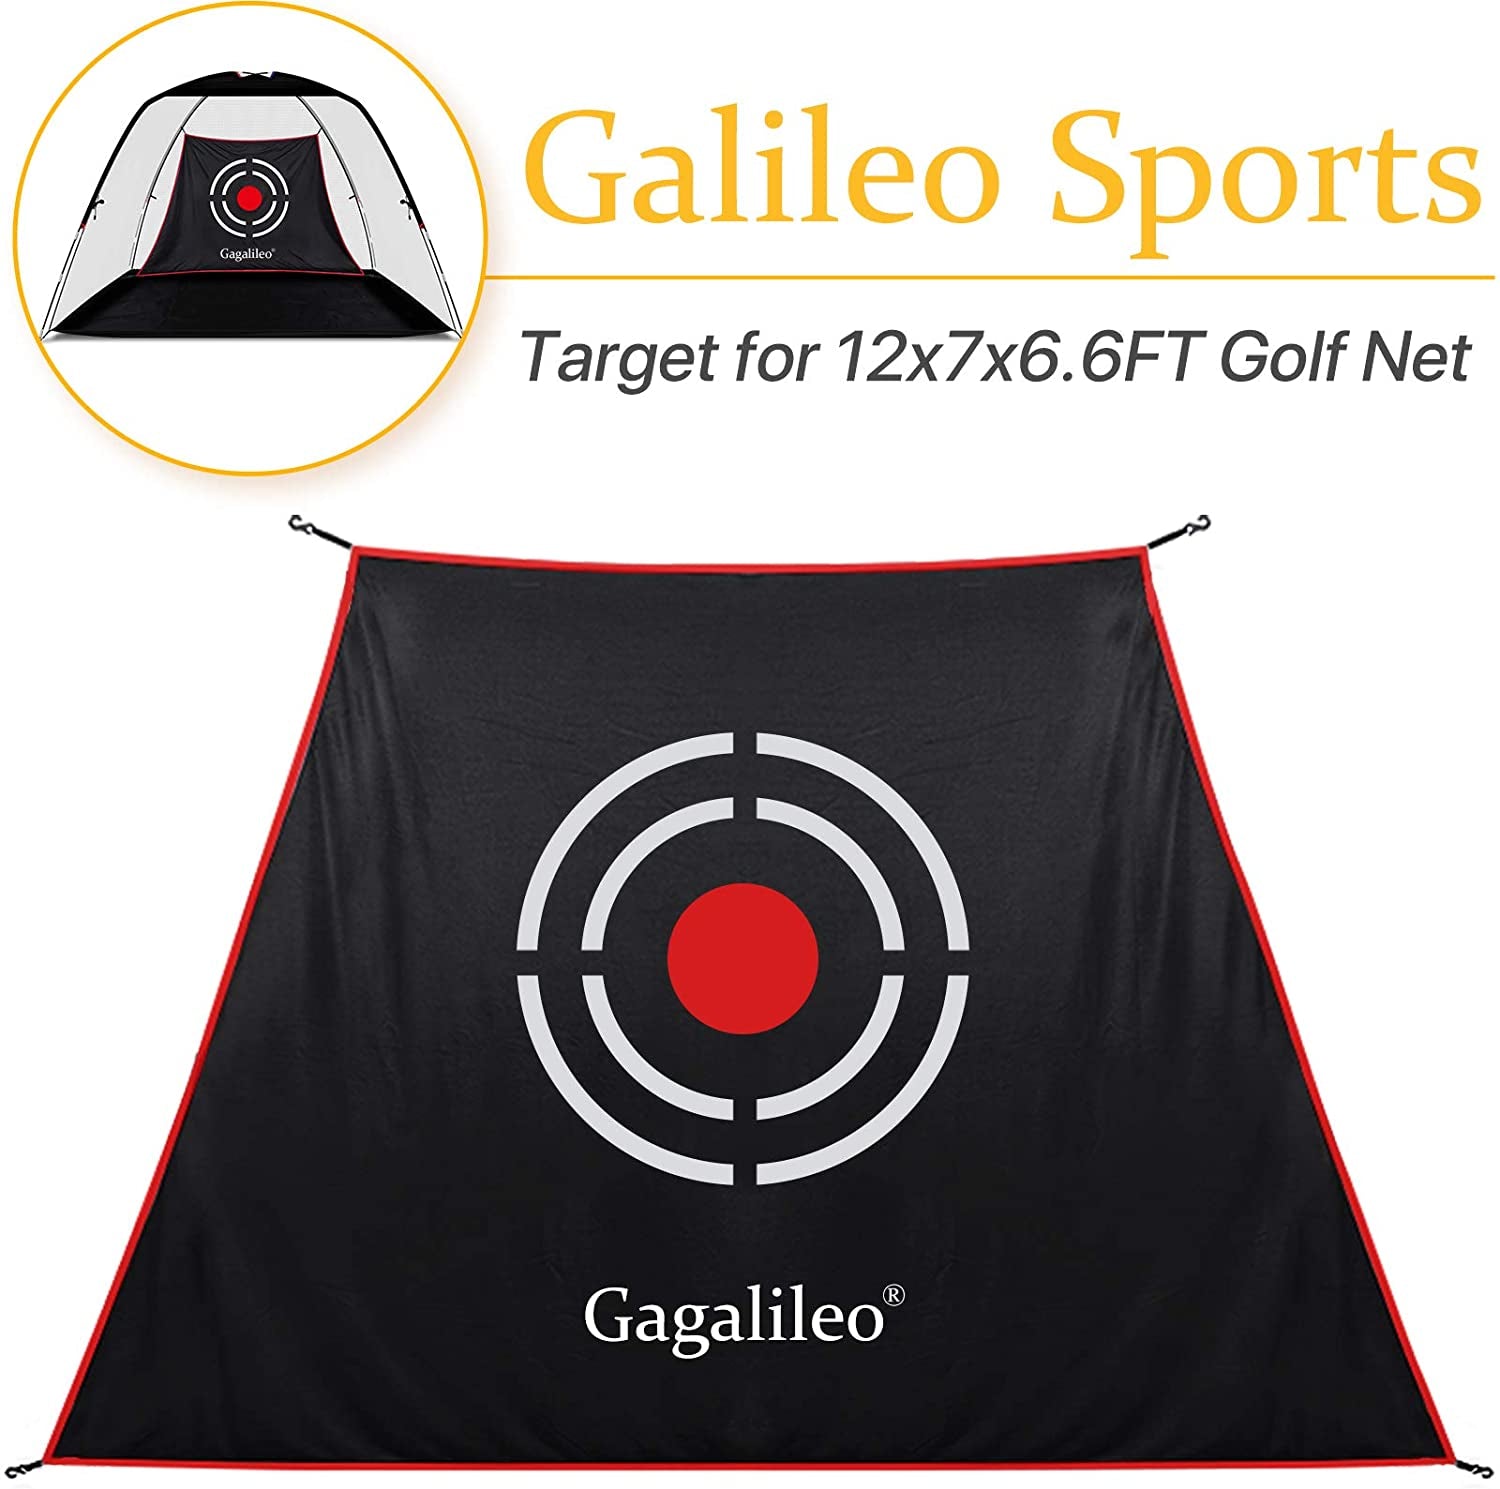 Reemplazo de objetivo de golf Galileo en forma de escalera